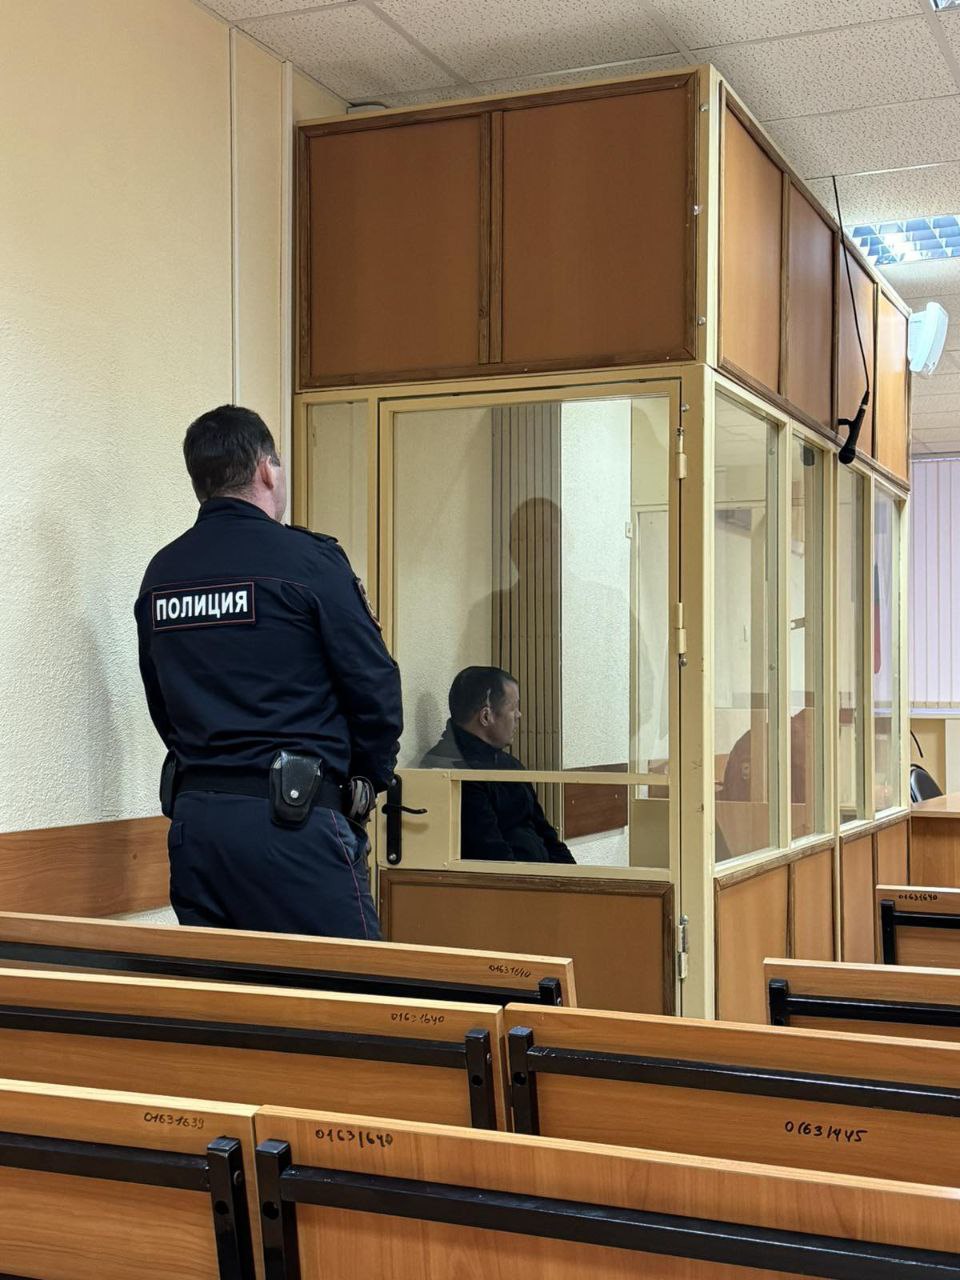  В Ижевске заключили под стражу обвиняемых в похищении местного жителя ради выкупа